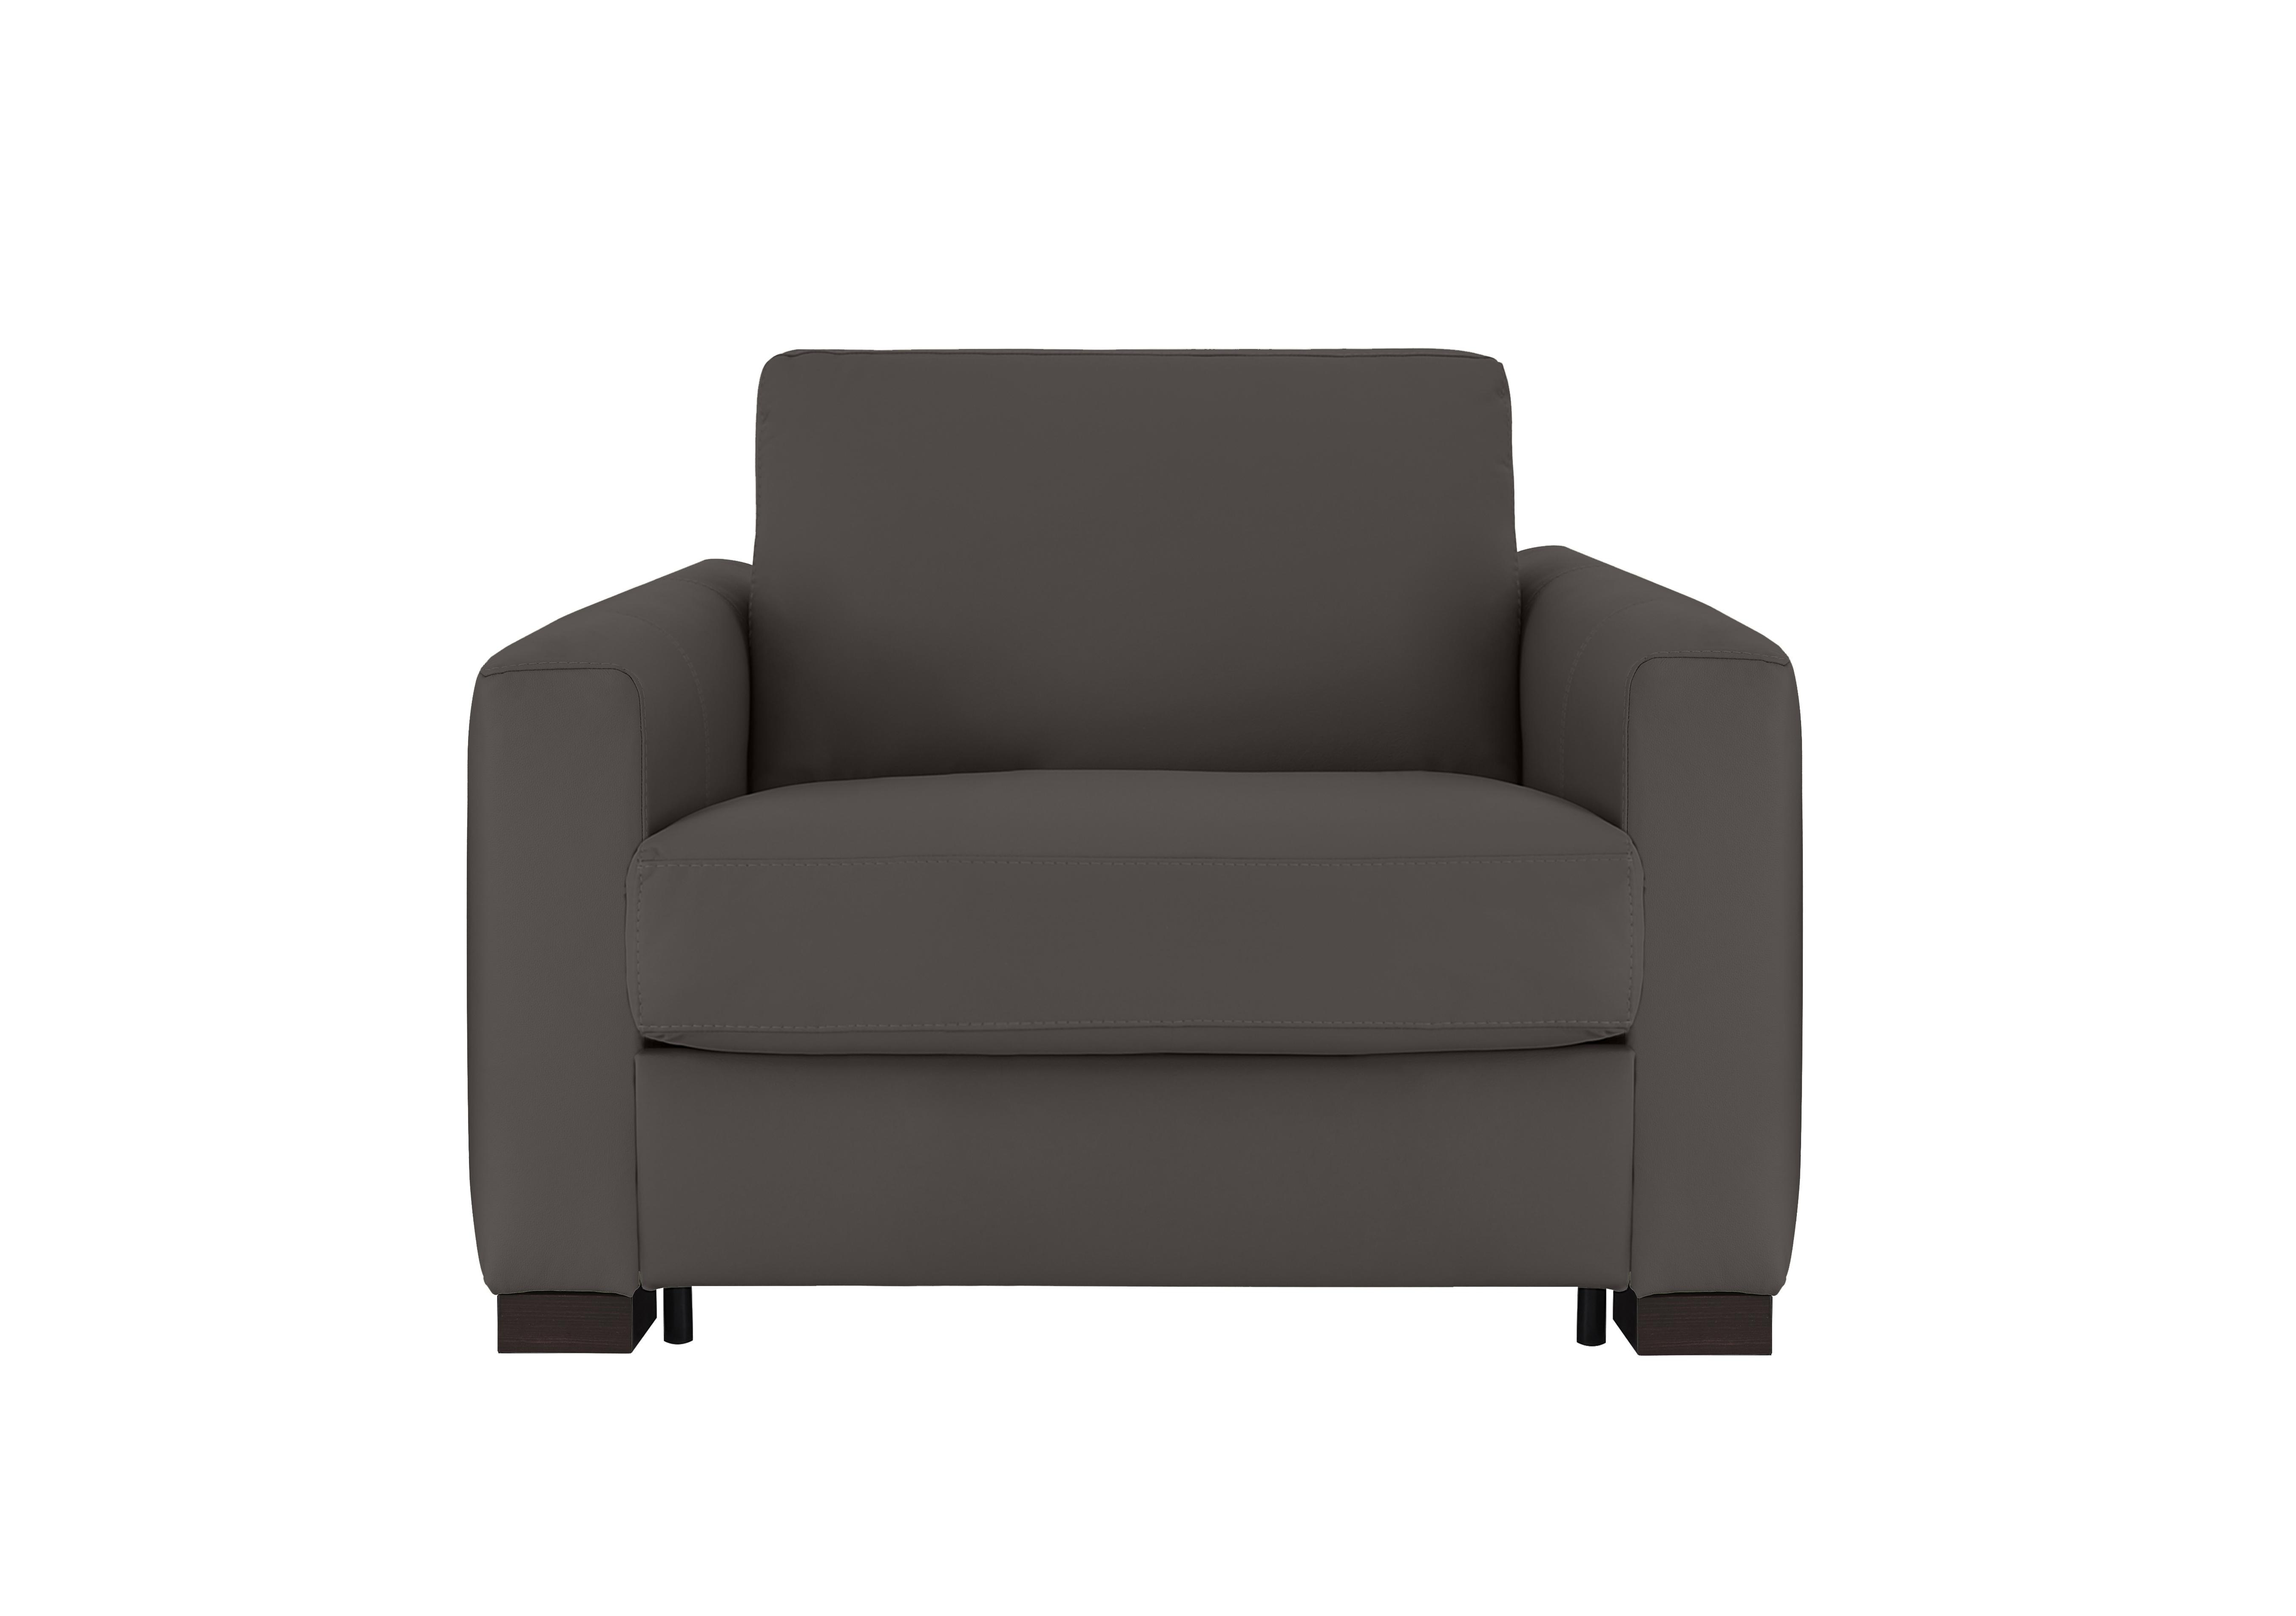 Alcova Leather Chair Sofa Bed with Box Arms in Torello Grigio Scuro 327 on Furniture Village